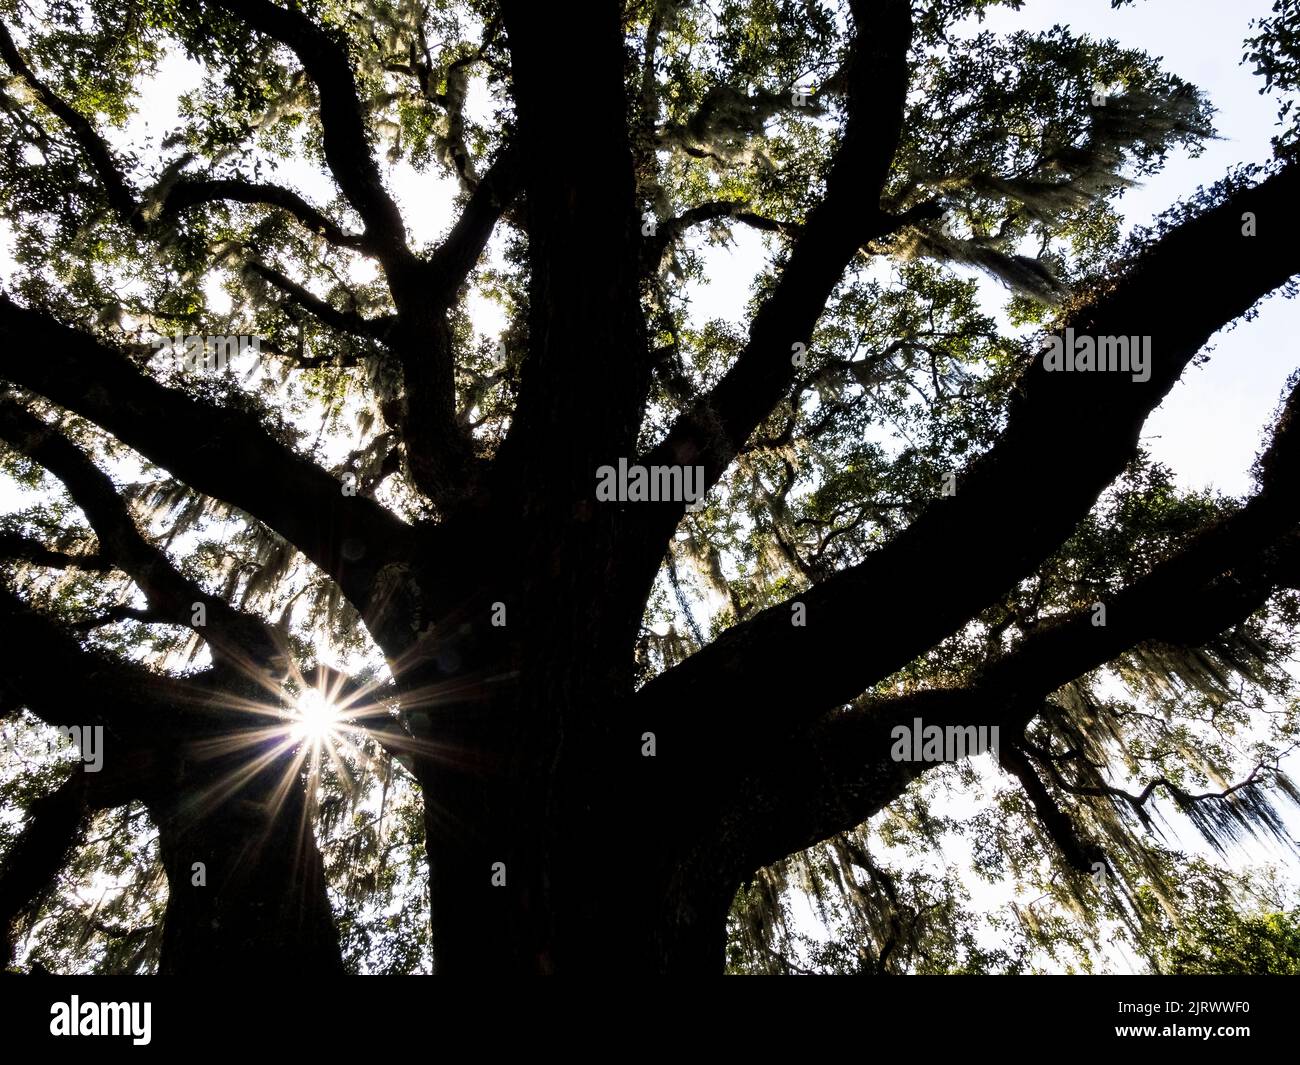 Live Oak Tree dans le quartier historique de Washington Oaks Gardens State Park à Palm Coast en Floride Banque D'Images